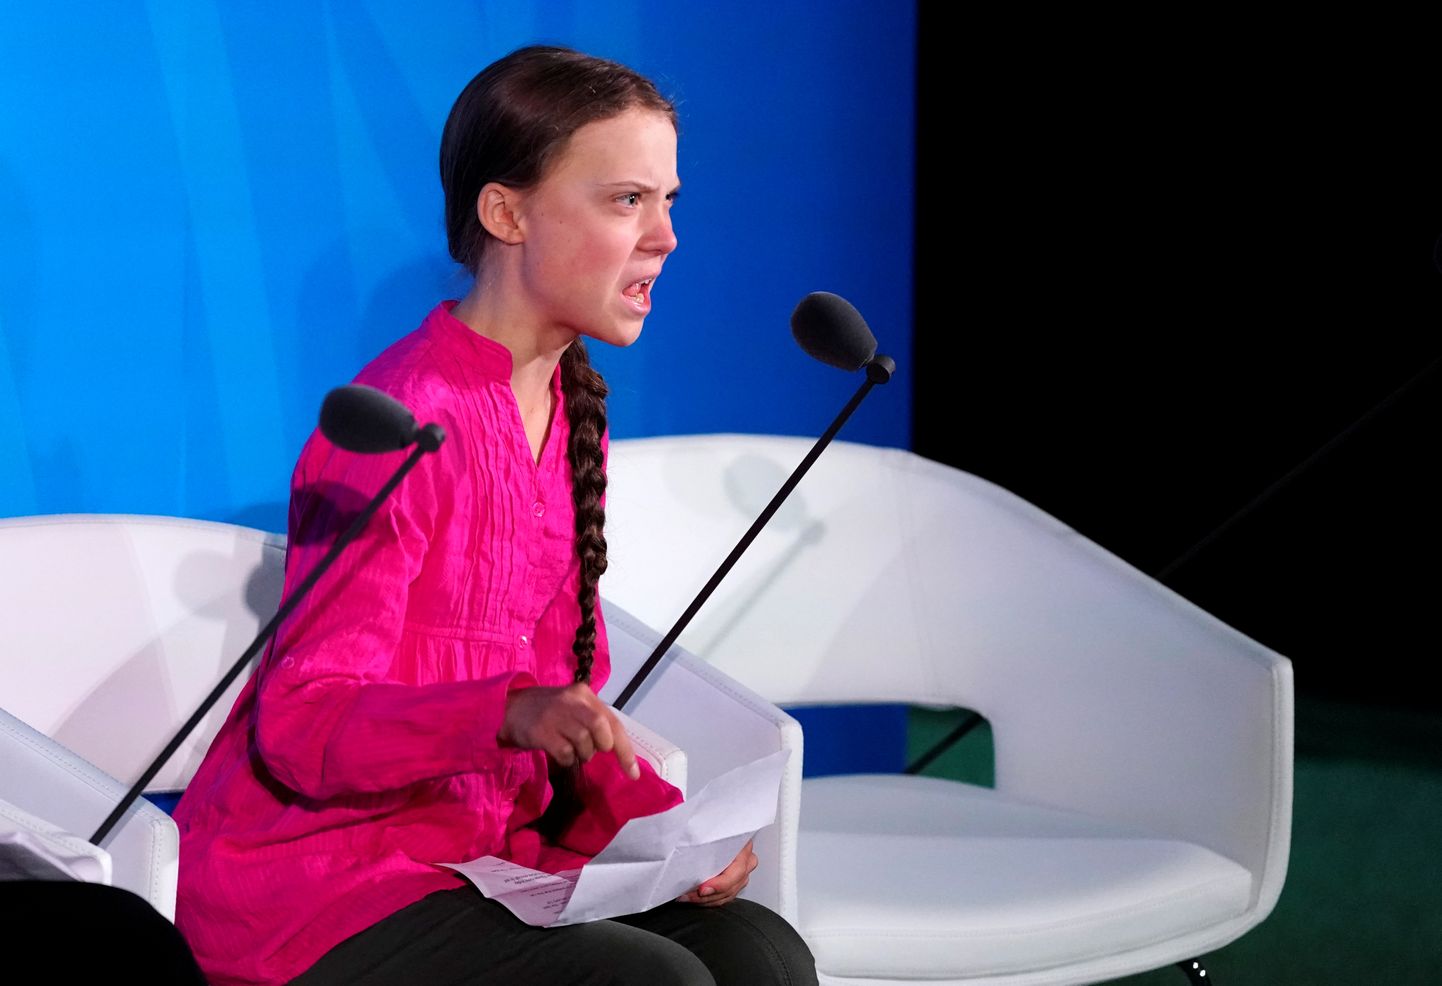 Kliimaaktivist Greta Thunberg esines ÜRO kliimatippkohtumisel ja süüdistas riigijuhte ebapiisavas tegevuses kliimamuutuste pidurdamisel.